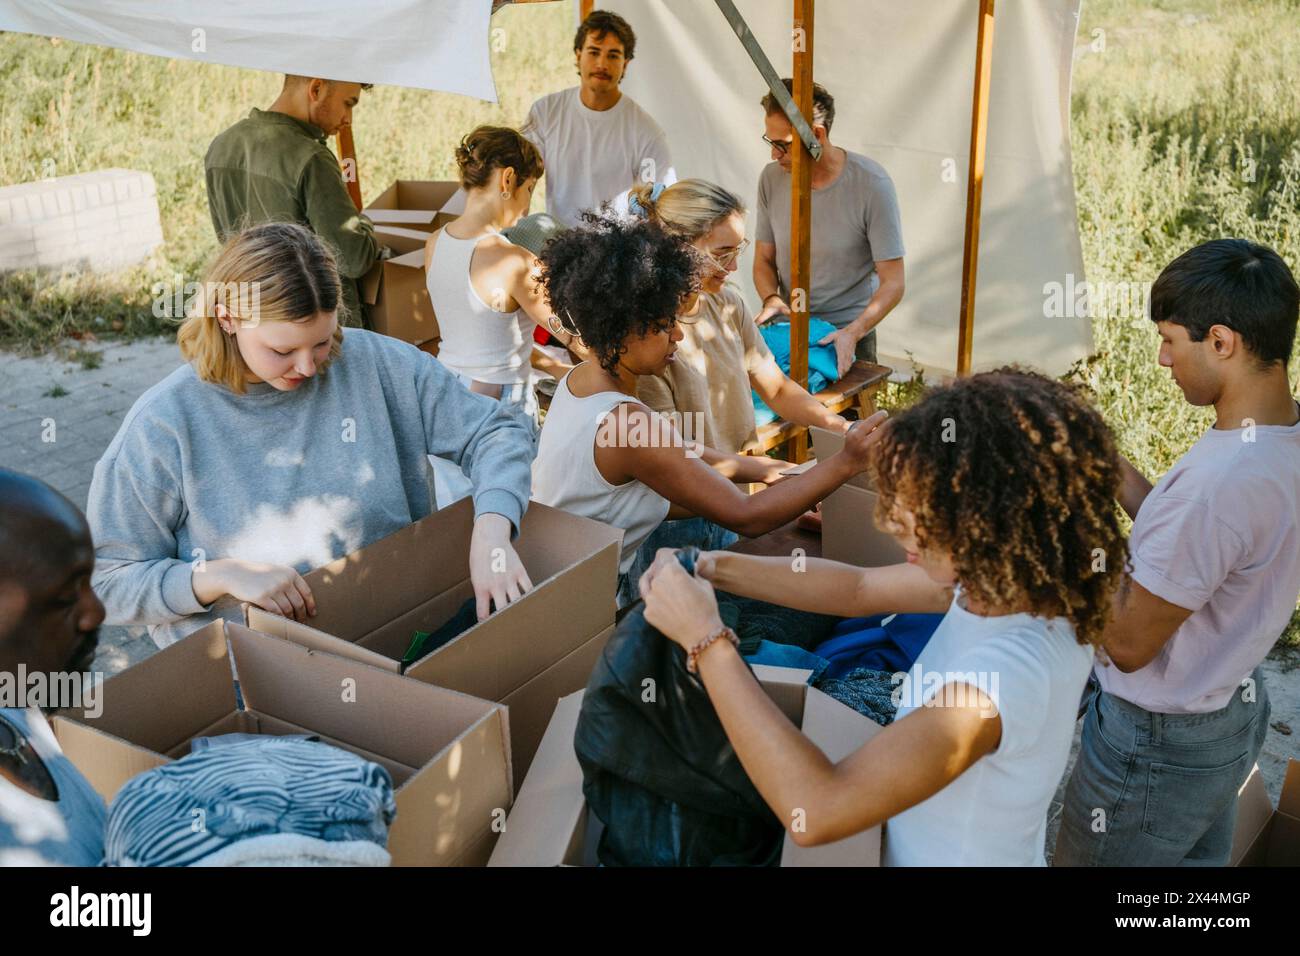 Vue en grand angle de l'équipe de bénévoles triant des vêtements dans des boîtes en carton pendant une campagne caritative au centre communautaire Banque D'Images